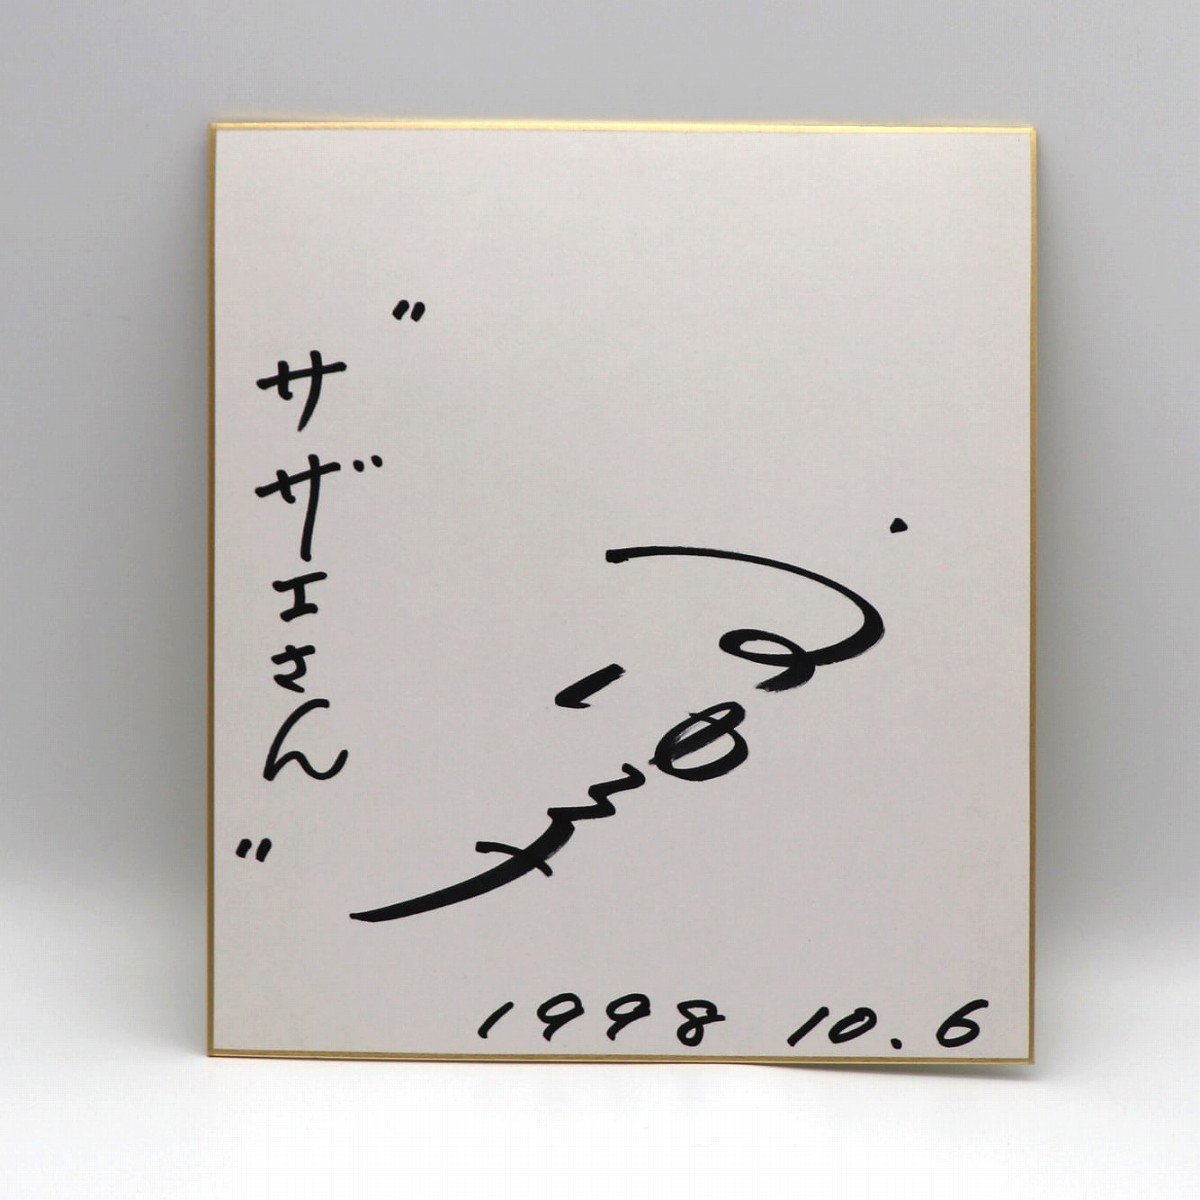 Yuko Uno･Papel de color firmado･Escrito a mano･Tema musical de Sazae-san･No.200902-037･Tamaño del paquete 60, Bienes de talento, firmar